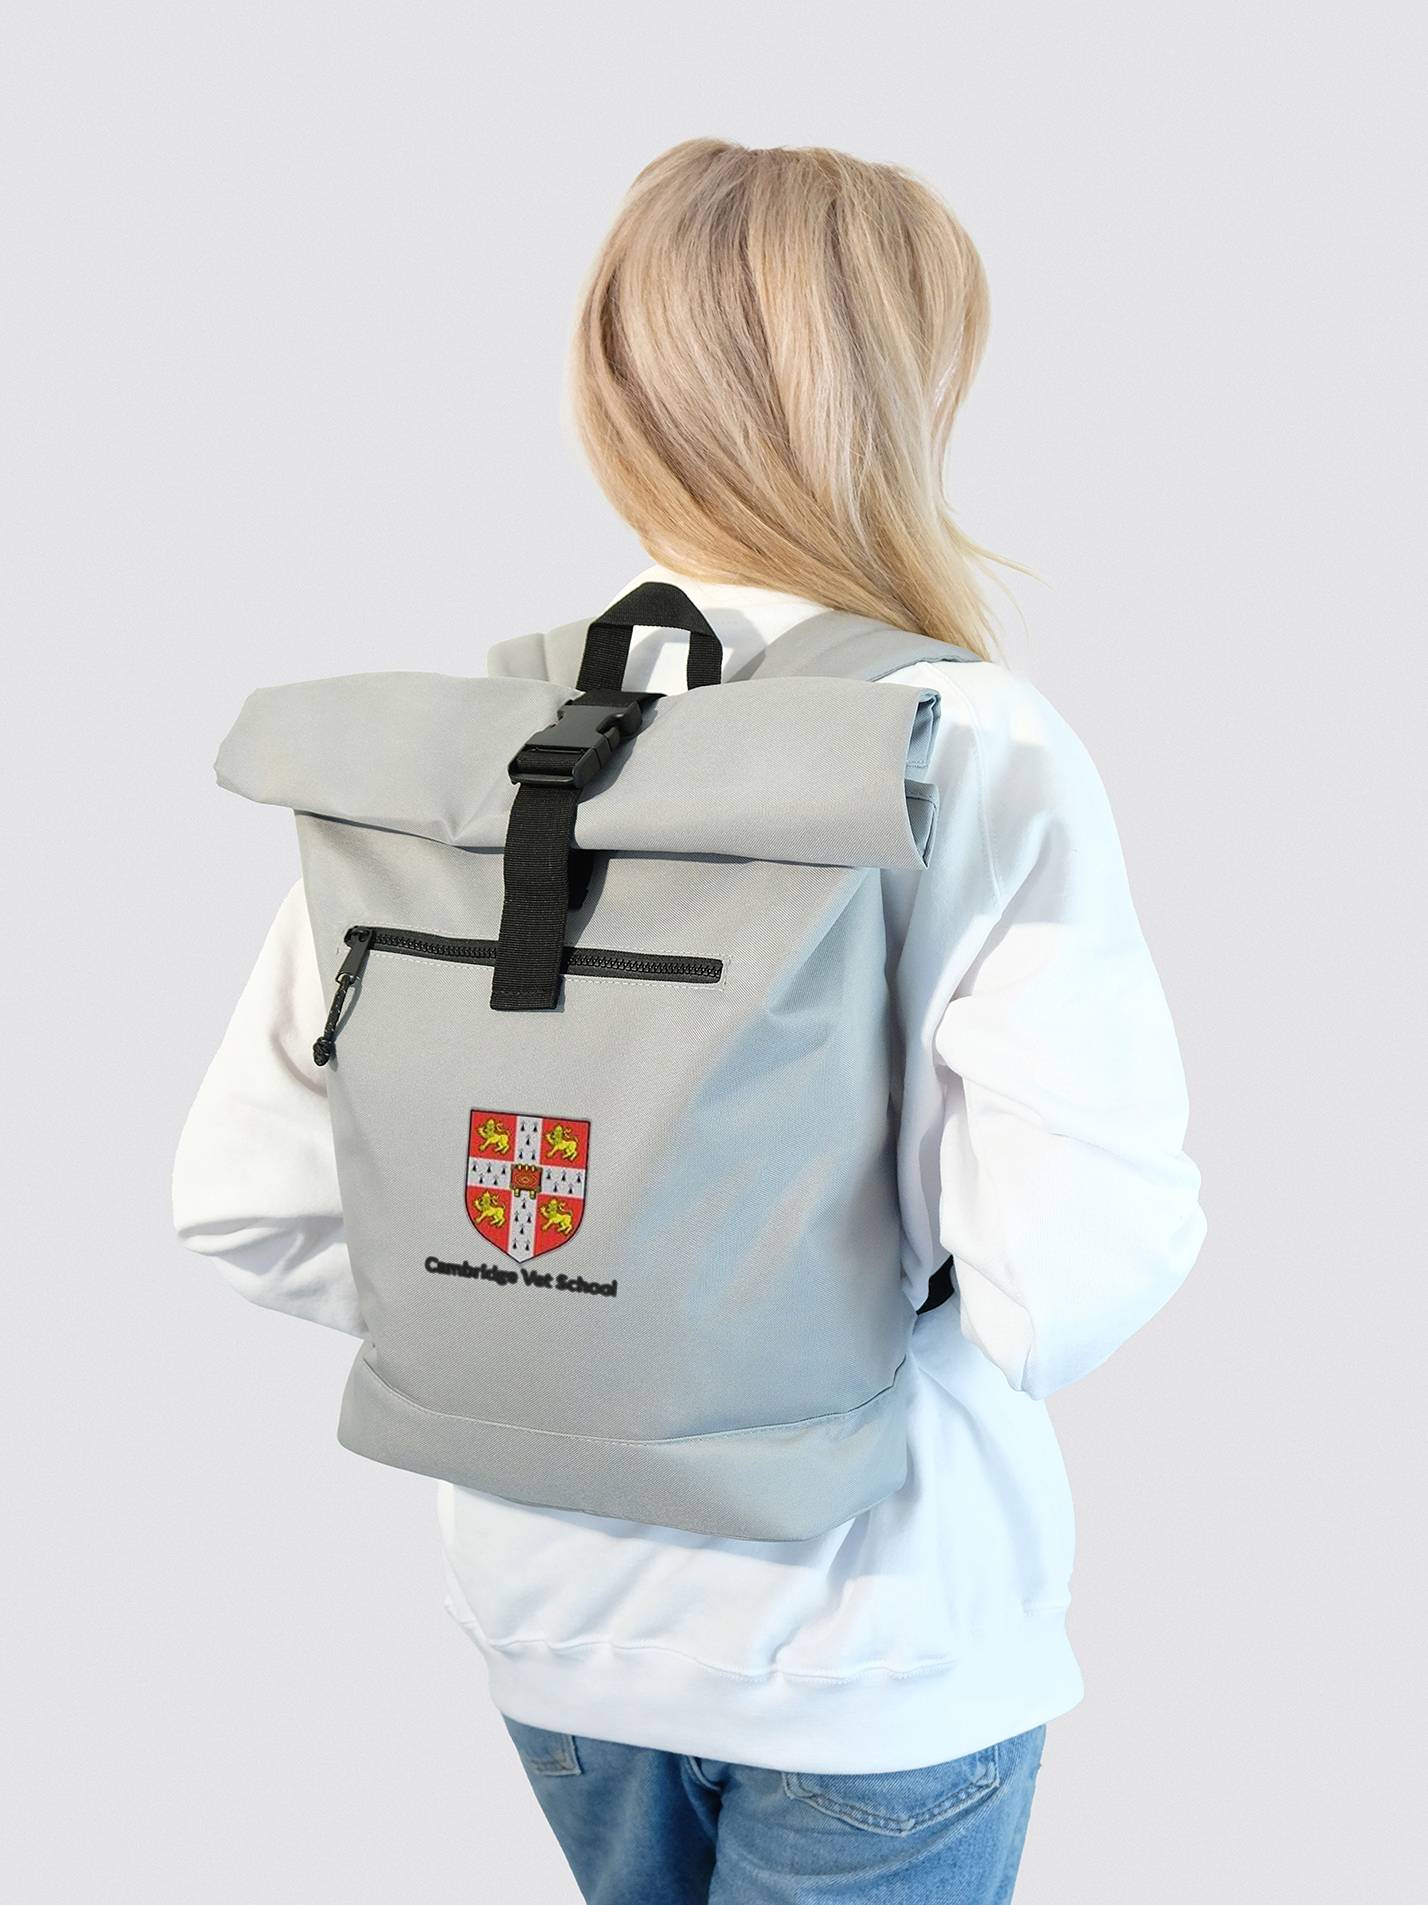 Cambridge Vet School Roll Top Backpack